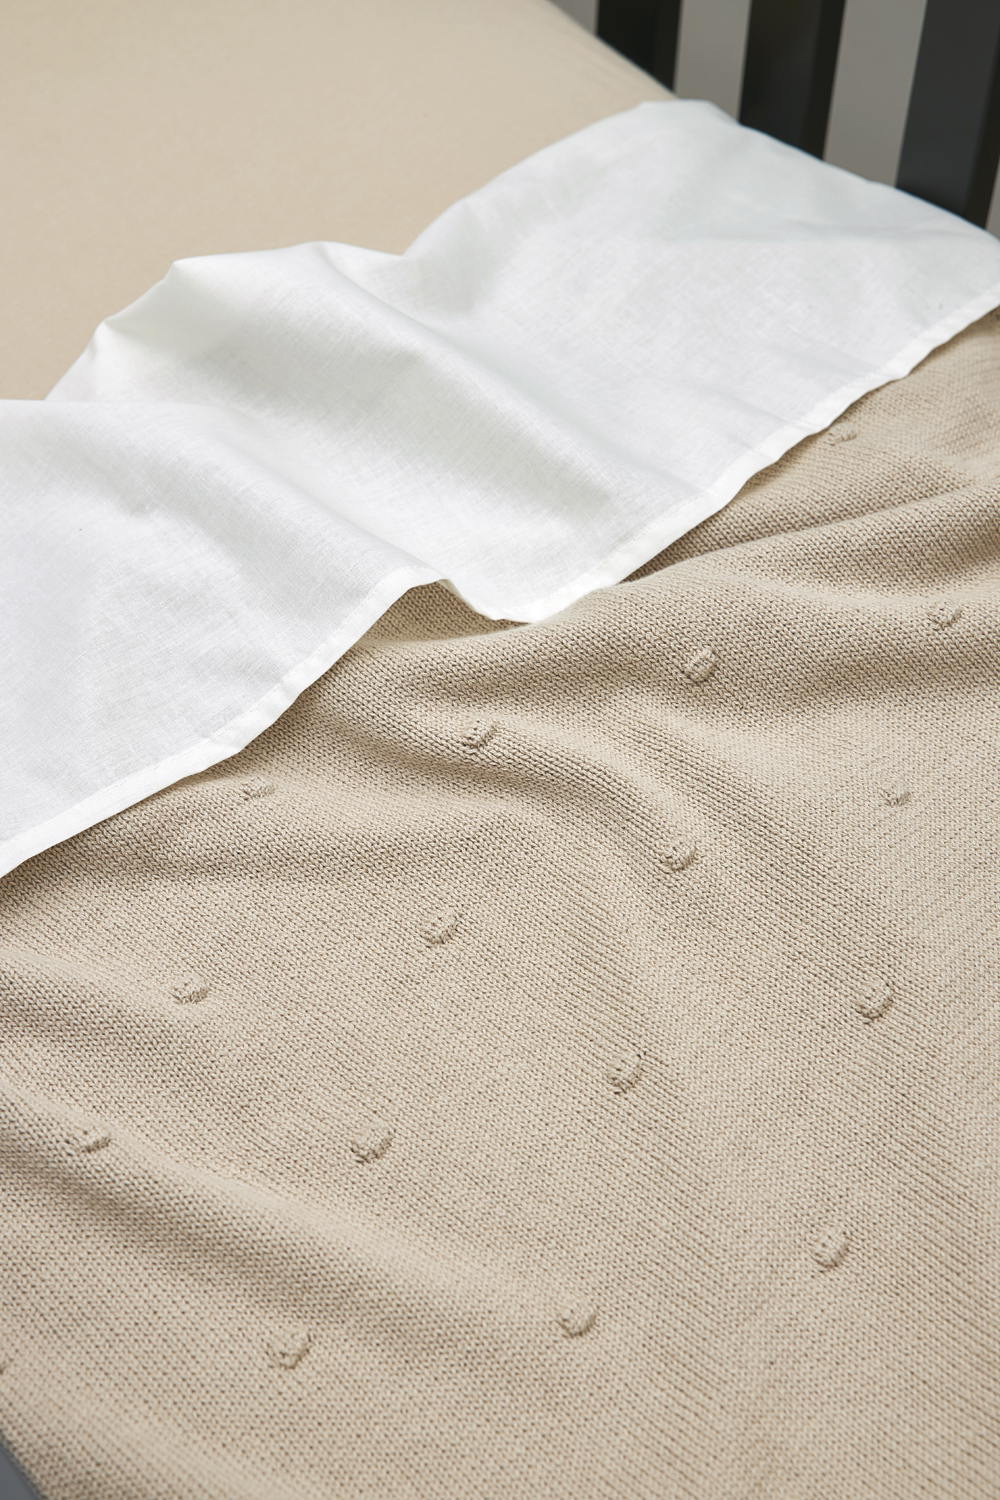 Ledikant deken Mini Knots - sand - 100x150cm